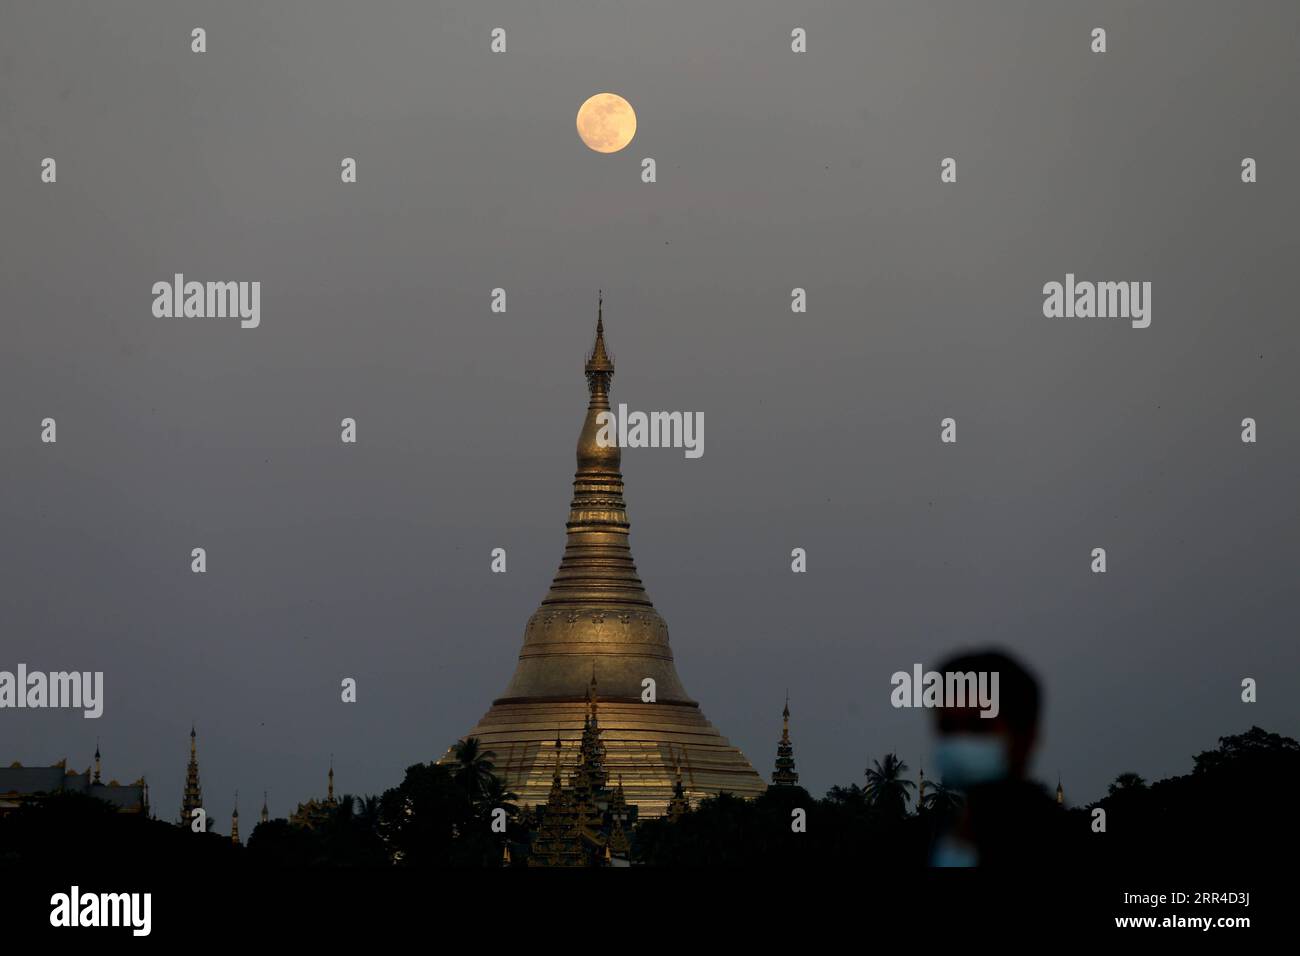 Nachrichten Themen der Woche KW48 201130 -- MYANMAR, 30. November 2020 -- Ein Vollmond erhebt sich über der Shwedagon-Pagode in Yangon, Myanmar, 29. November 2020. Das Tazaungdaing Festival, auch als Festival der Lichter bekannt, fällt auf den Vollmondtag im achten Monat des traditionellen Myanmar Kalenders. Es wird als Nationalfeiertag in Myanmar gefeiert und markiert das Ende der Regenzeit. MYANMAR-YANGON-FULL MOON-TAZAUNGDAING FESTIVAL UXAUNG PUBLICATIONXNOTXINXCHN Stockfoto